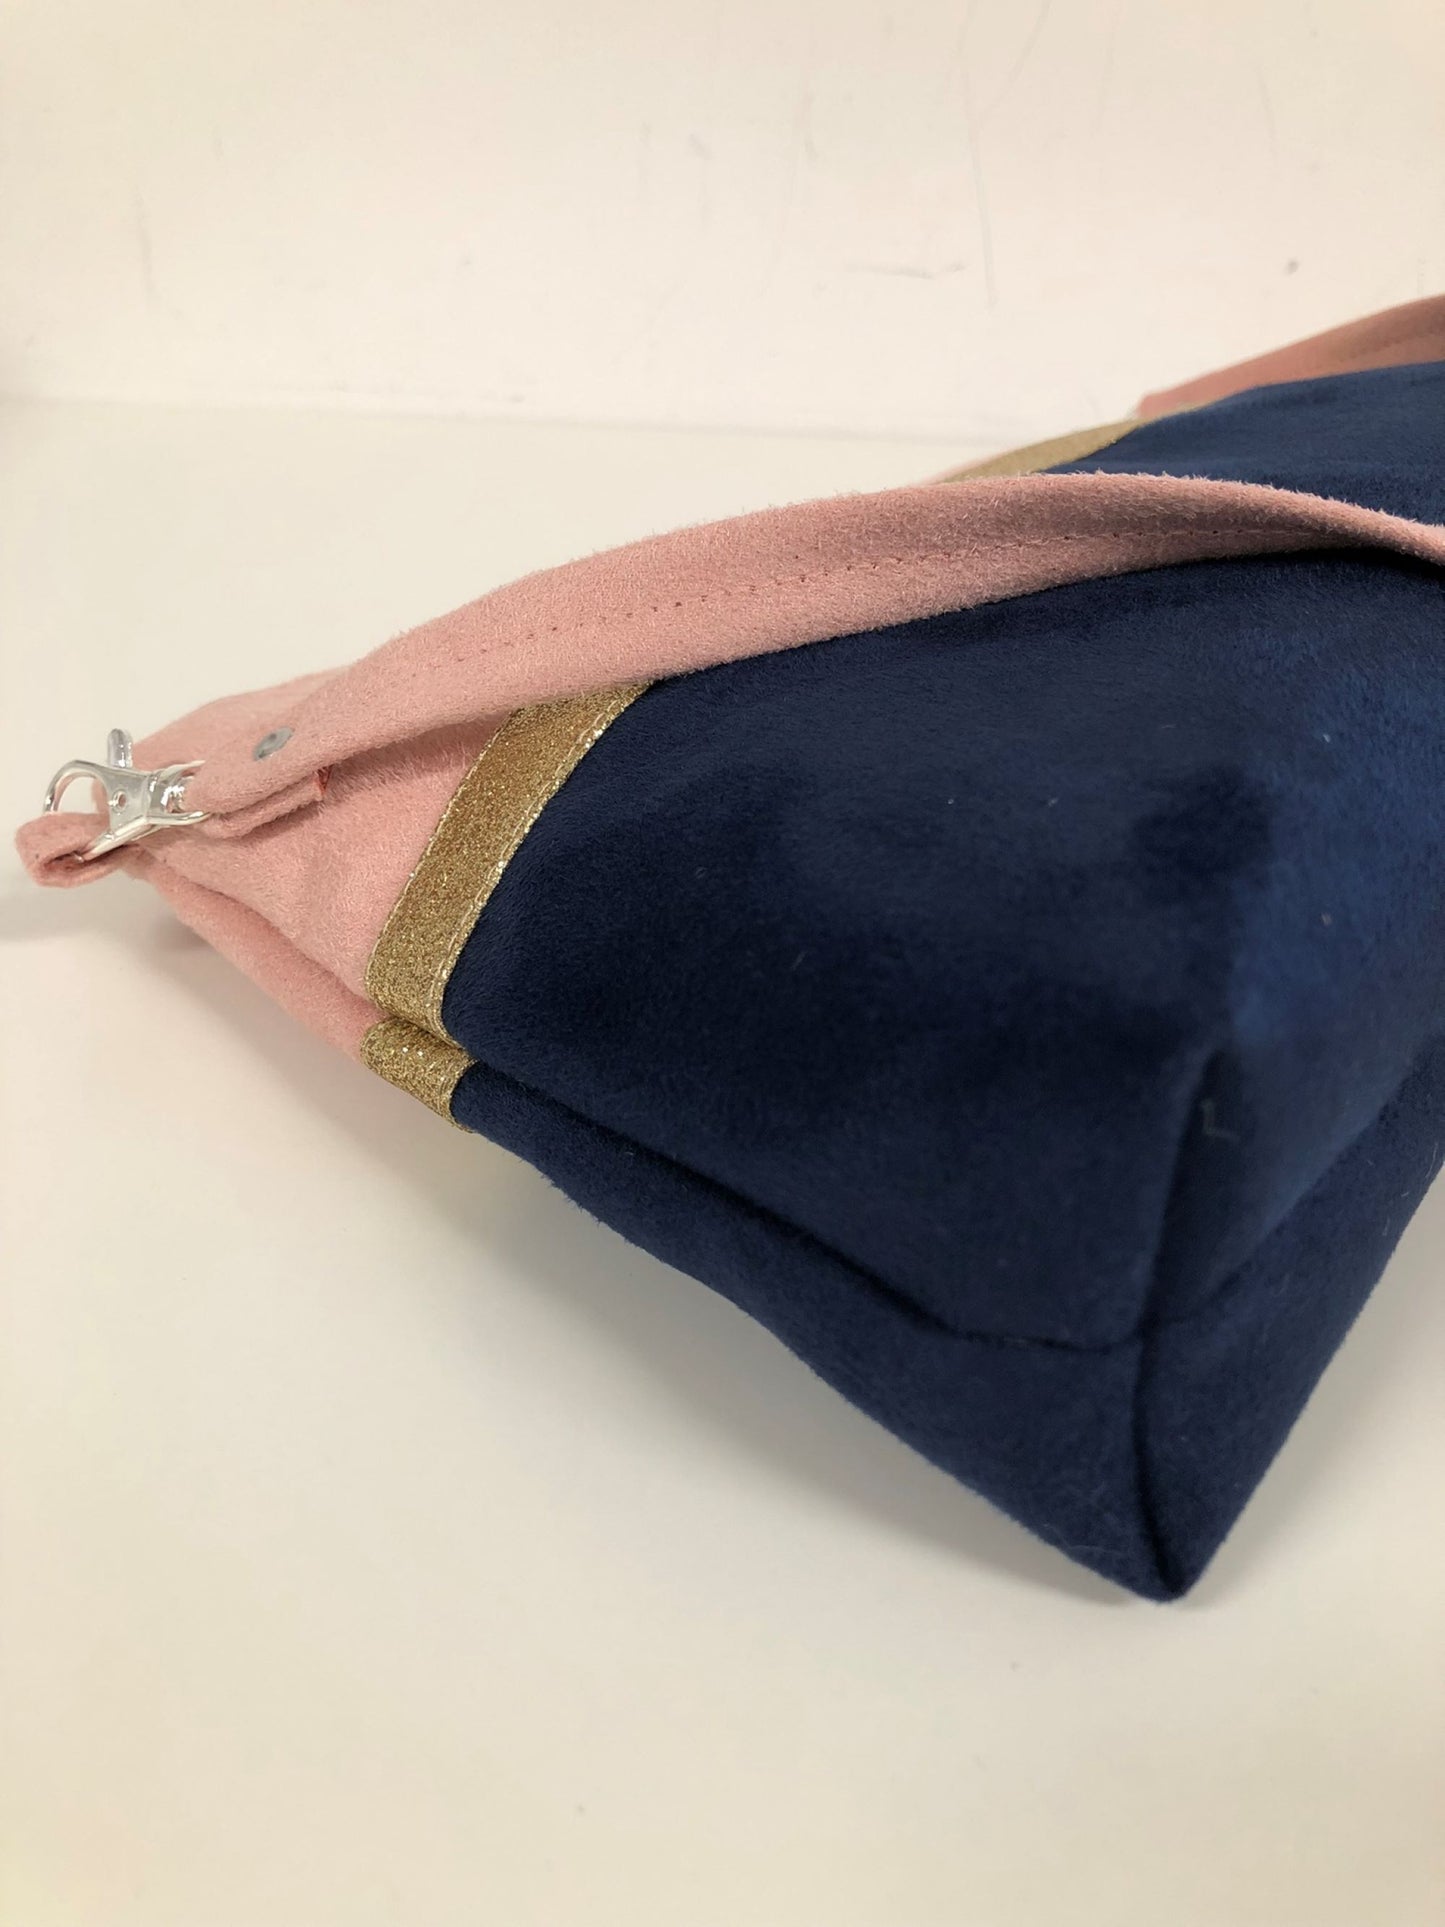 Le sac bandoulière Isa rose poudré et bleu marine à paillettes dorées